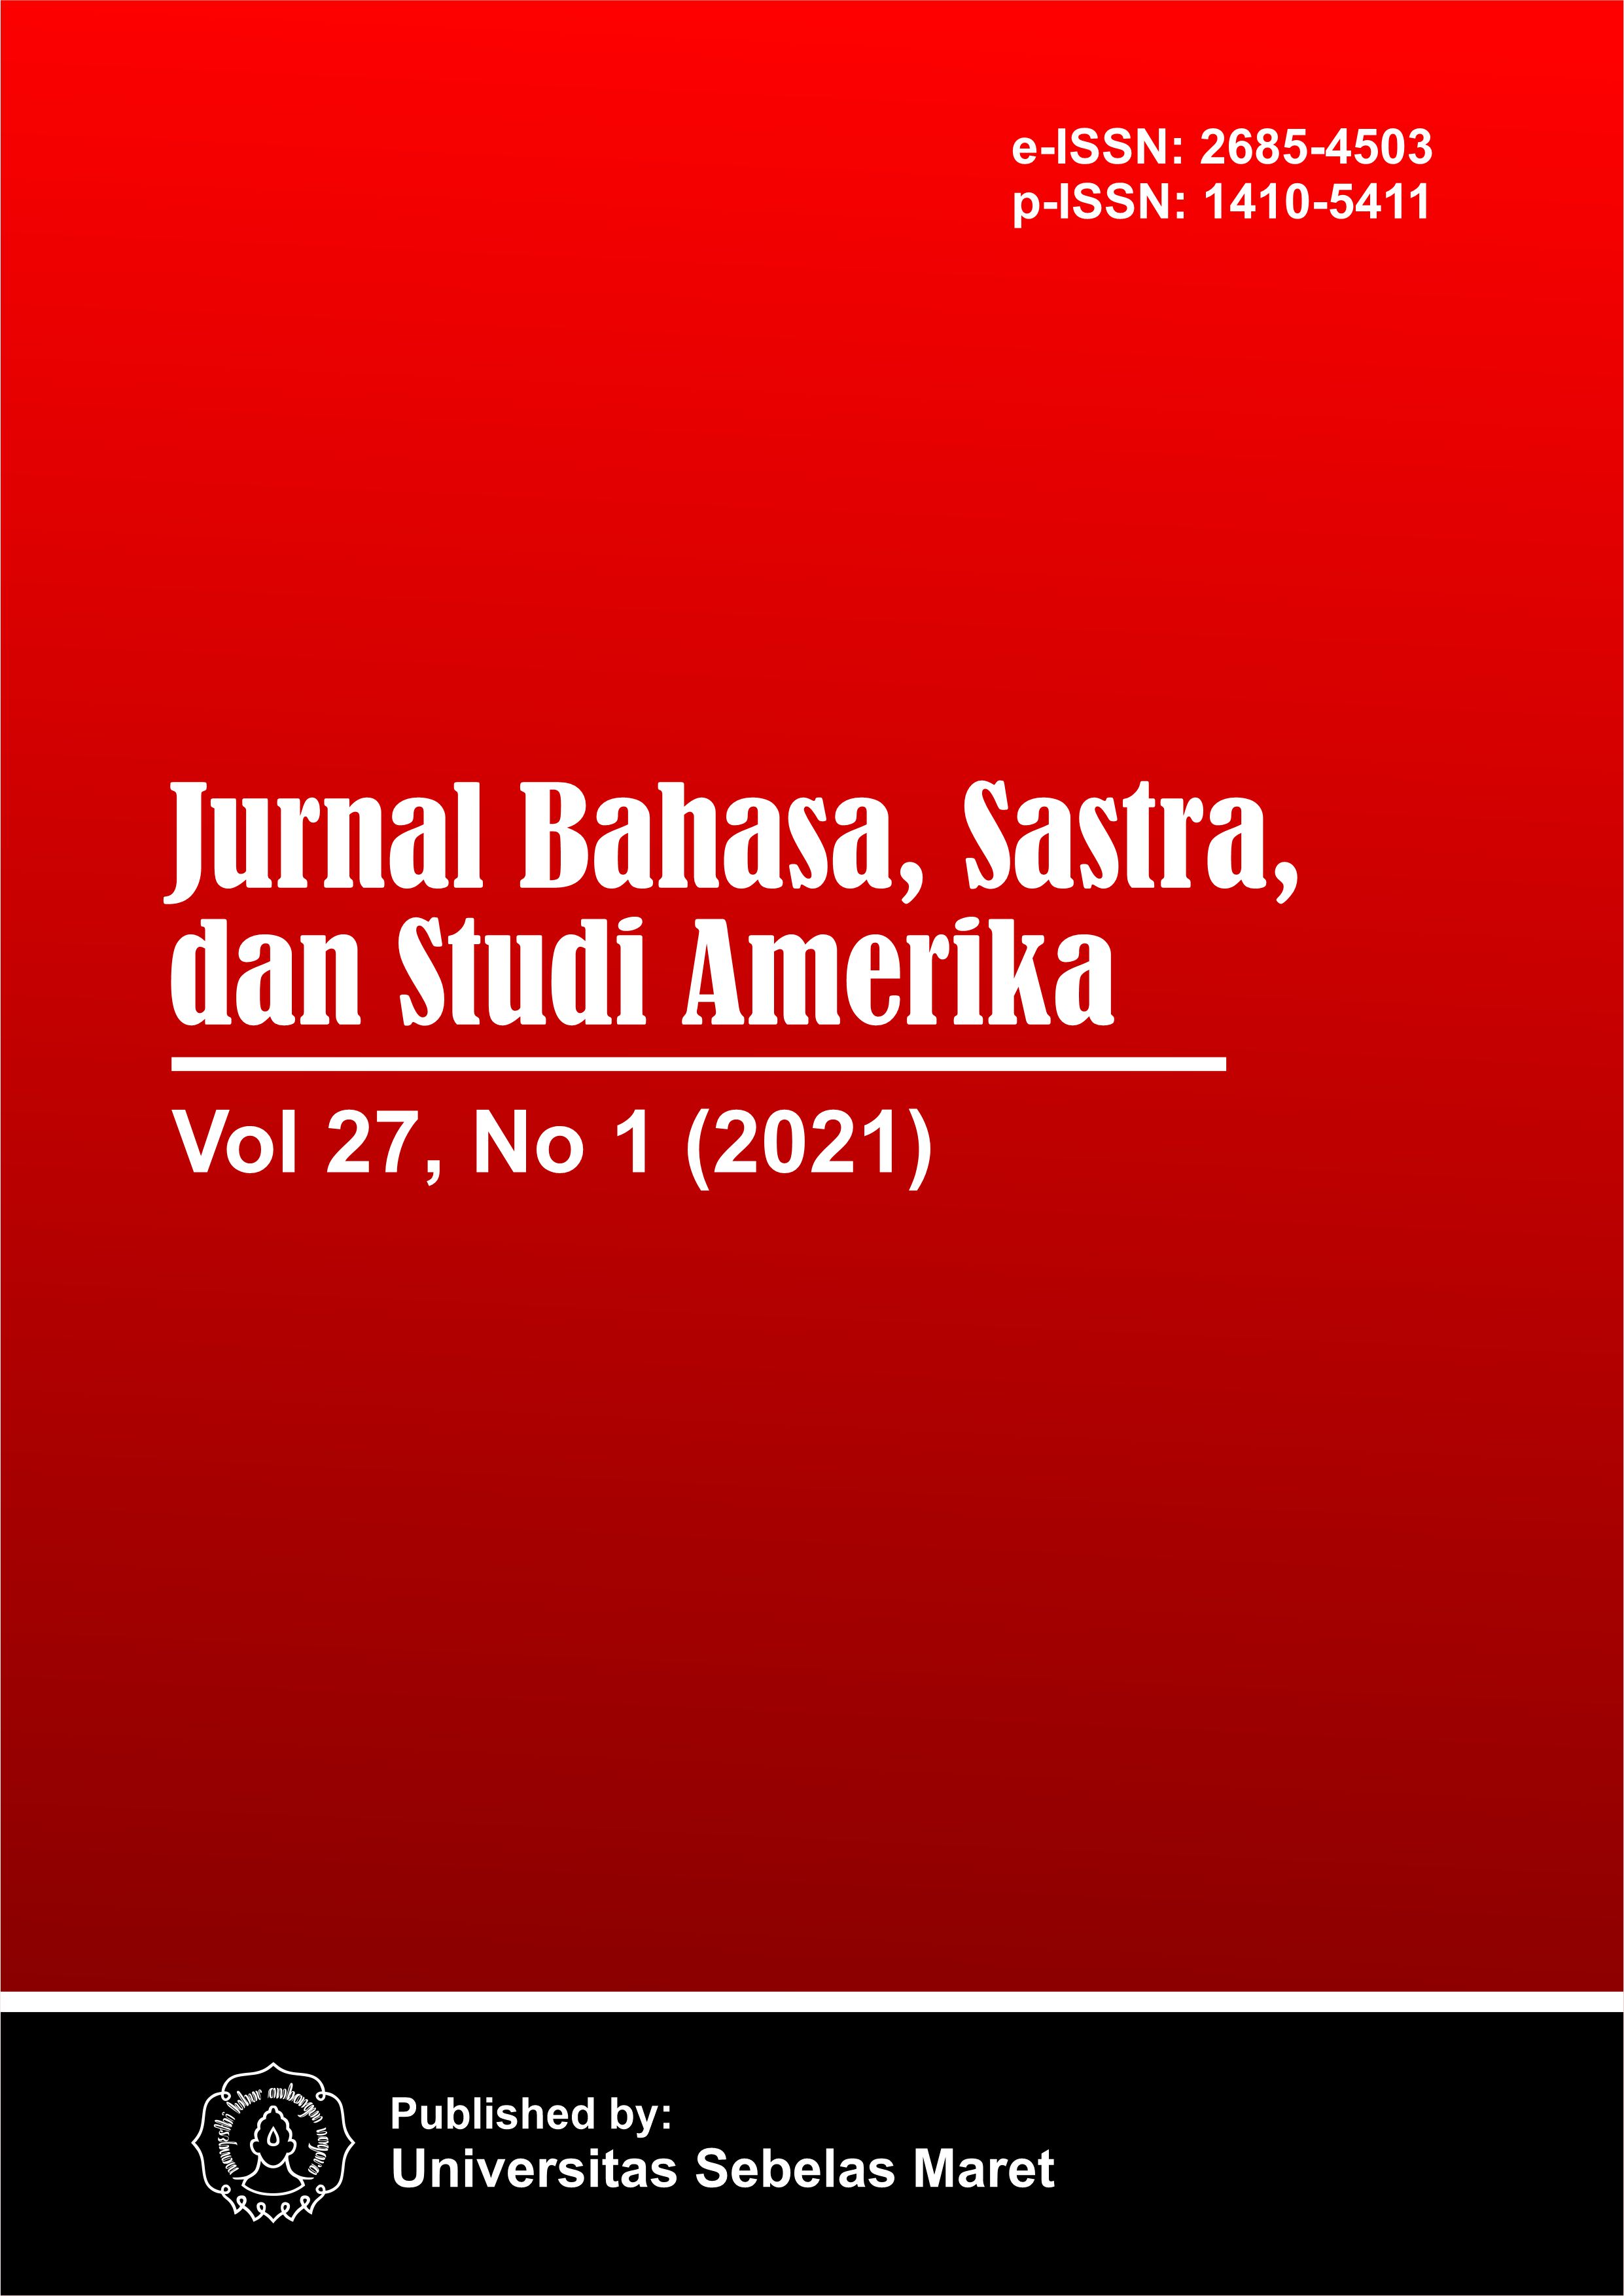 Cover-JBSSA